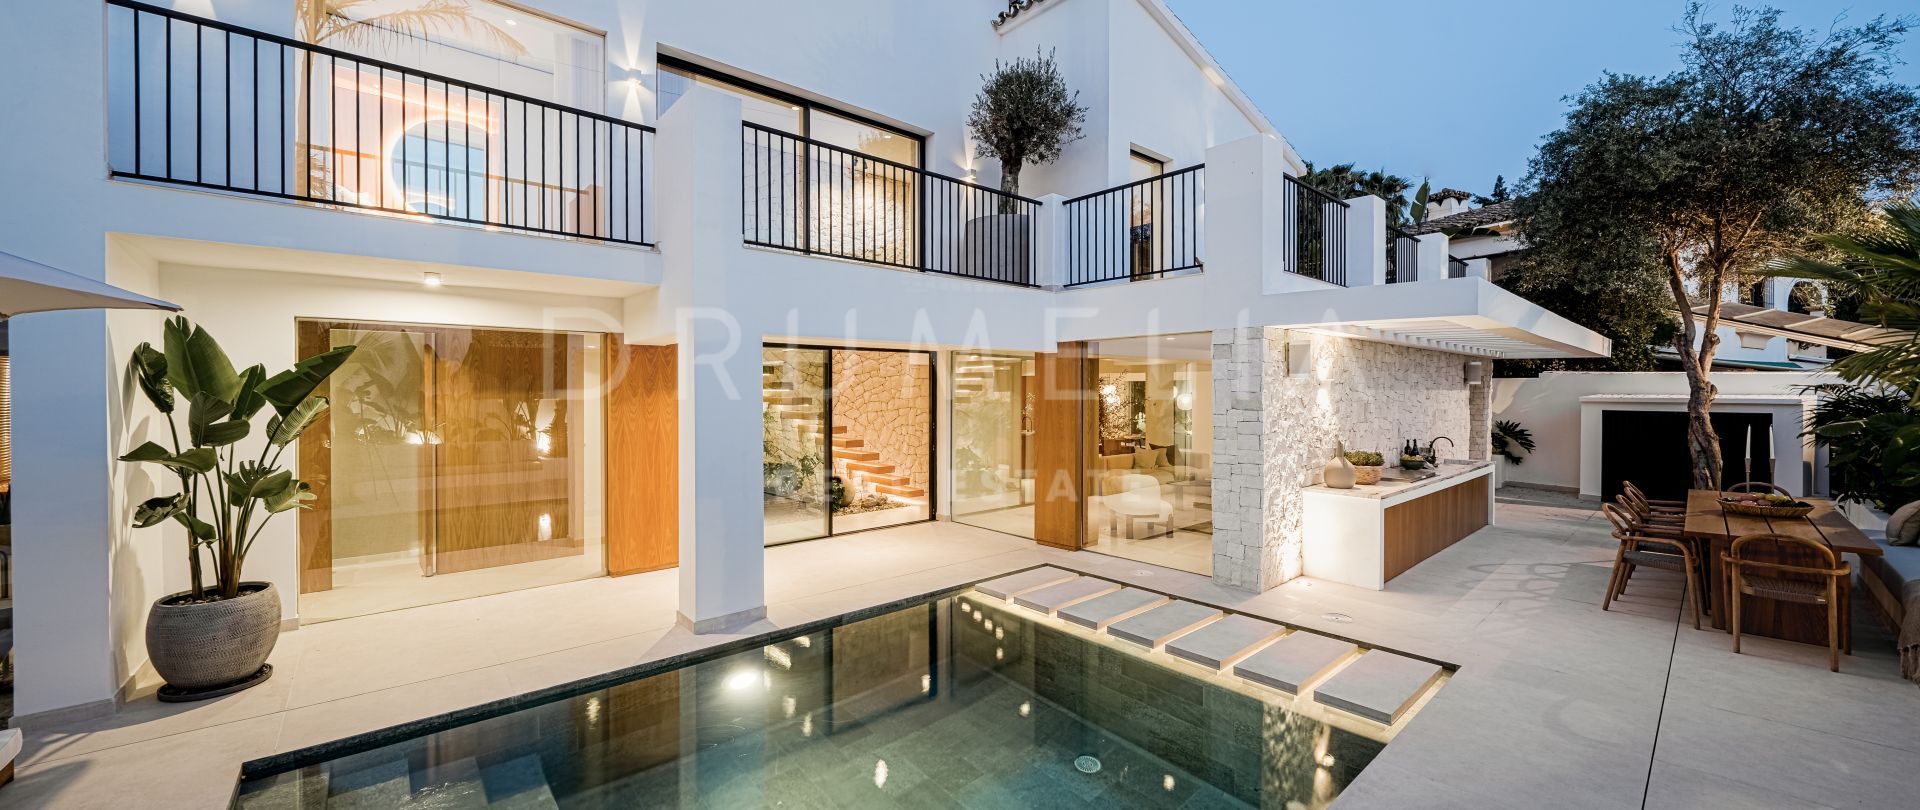 Fantastisk totalrenoverad villa med utmärkt läge i Nueva Andalucia, Marbella